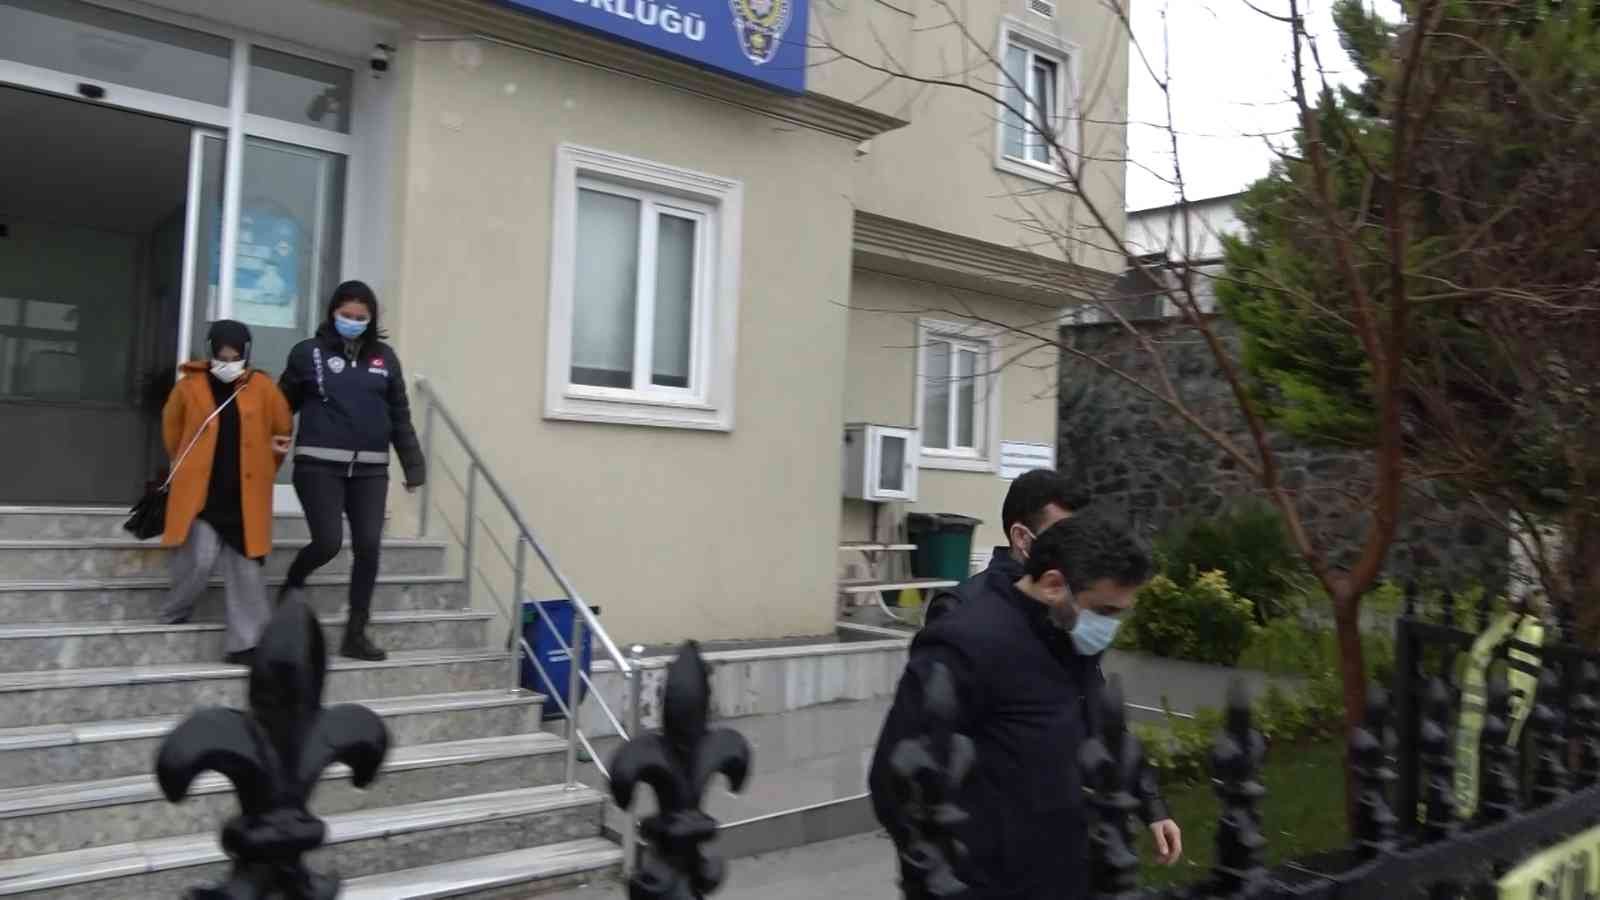 Fransa’da yaşayan iş adamını ‘Hamileyim’ diyerek dolandıran şantaj çetesi yakalandı #istanbul